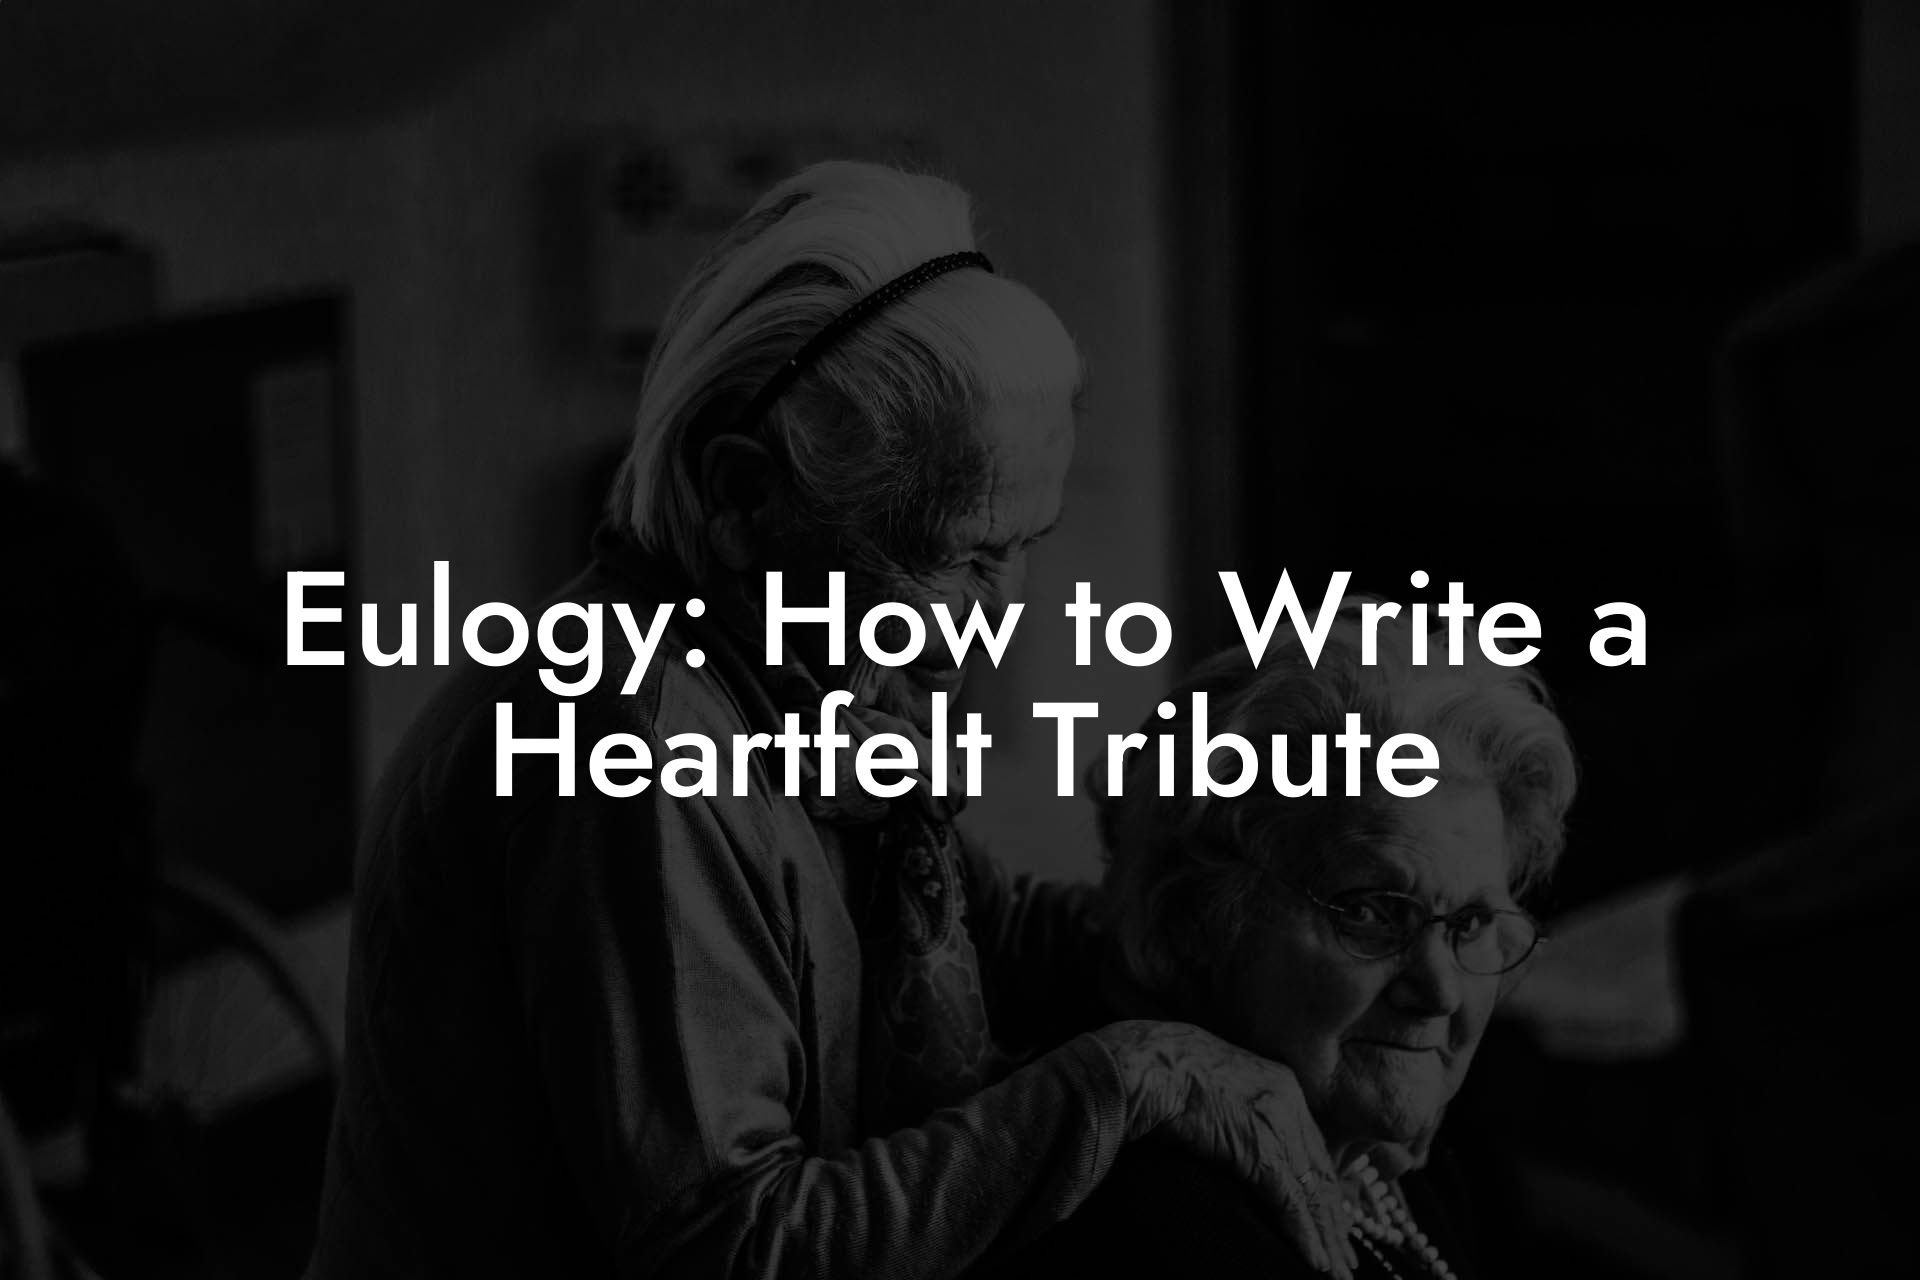 Eulogy: How to Write a Heartfelt Tribute